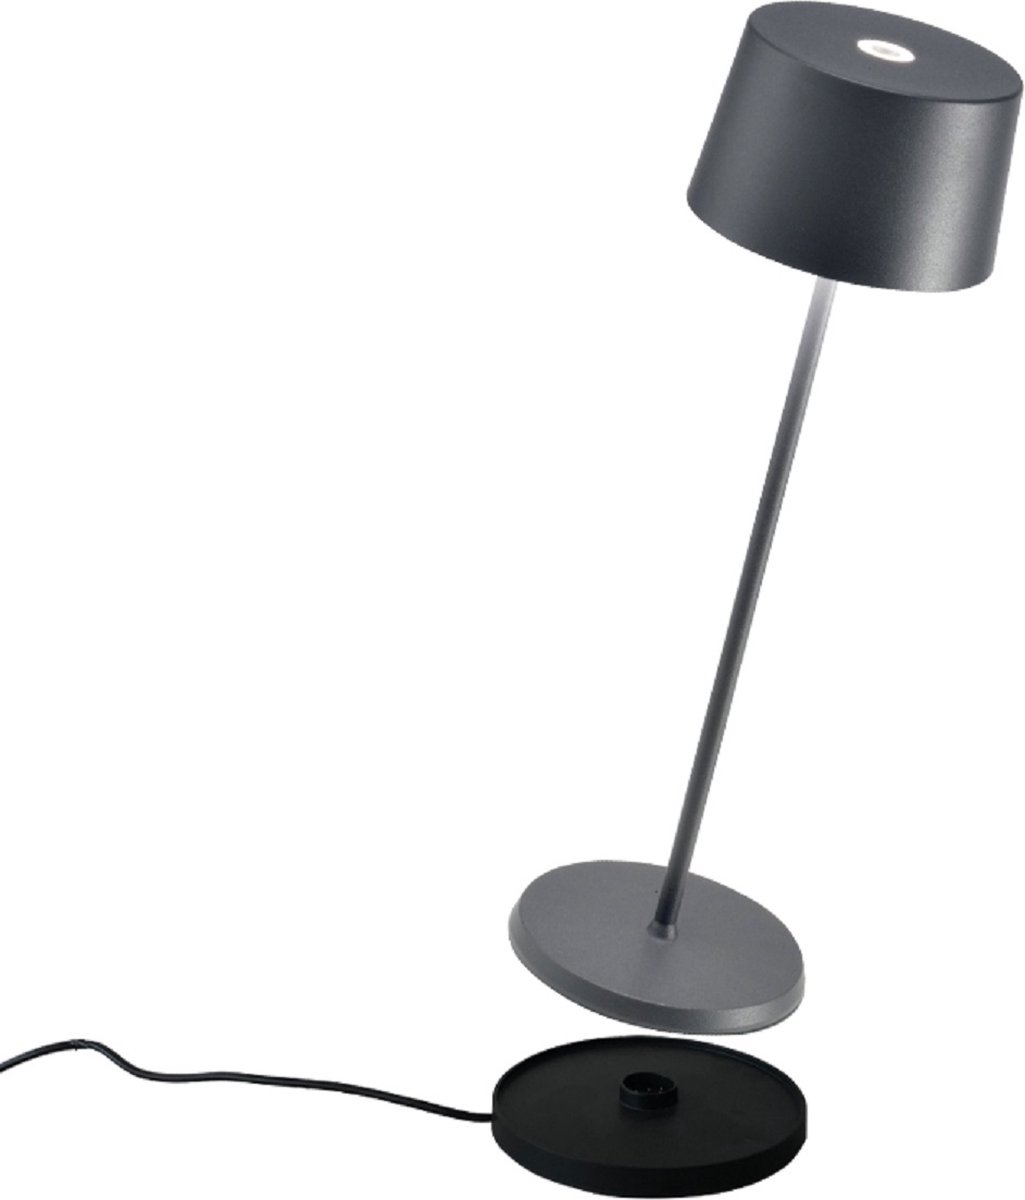 Zafferano - Olivia - Donker Grijs - H35.5cm - Ledlamp - Bureaulamp – Tafellamp – Snoerloos – Verplaatsbaar – Duurzaam - Voor binnen en buiten – LED - Dimbaar - 3000K - IP65 Spat Waterdicht - USB oplaadbaar